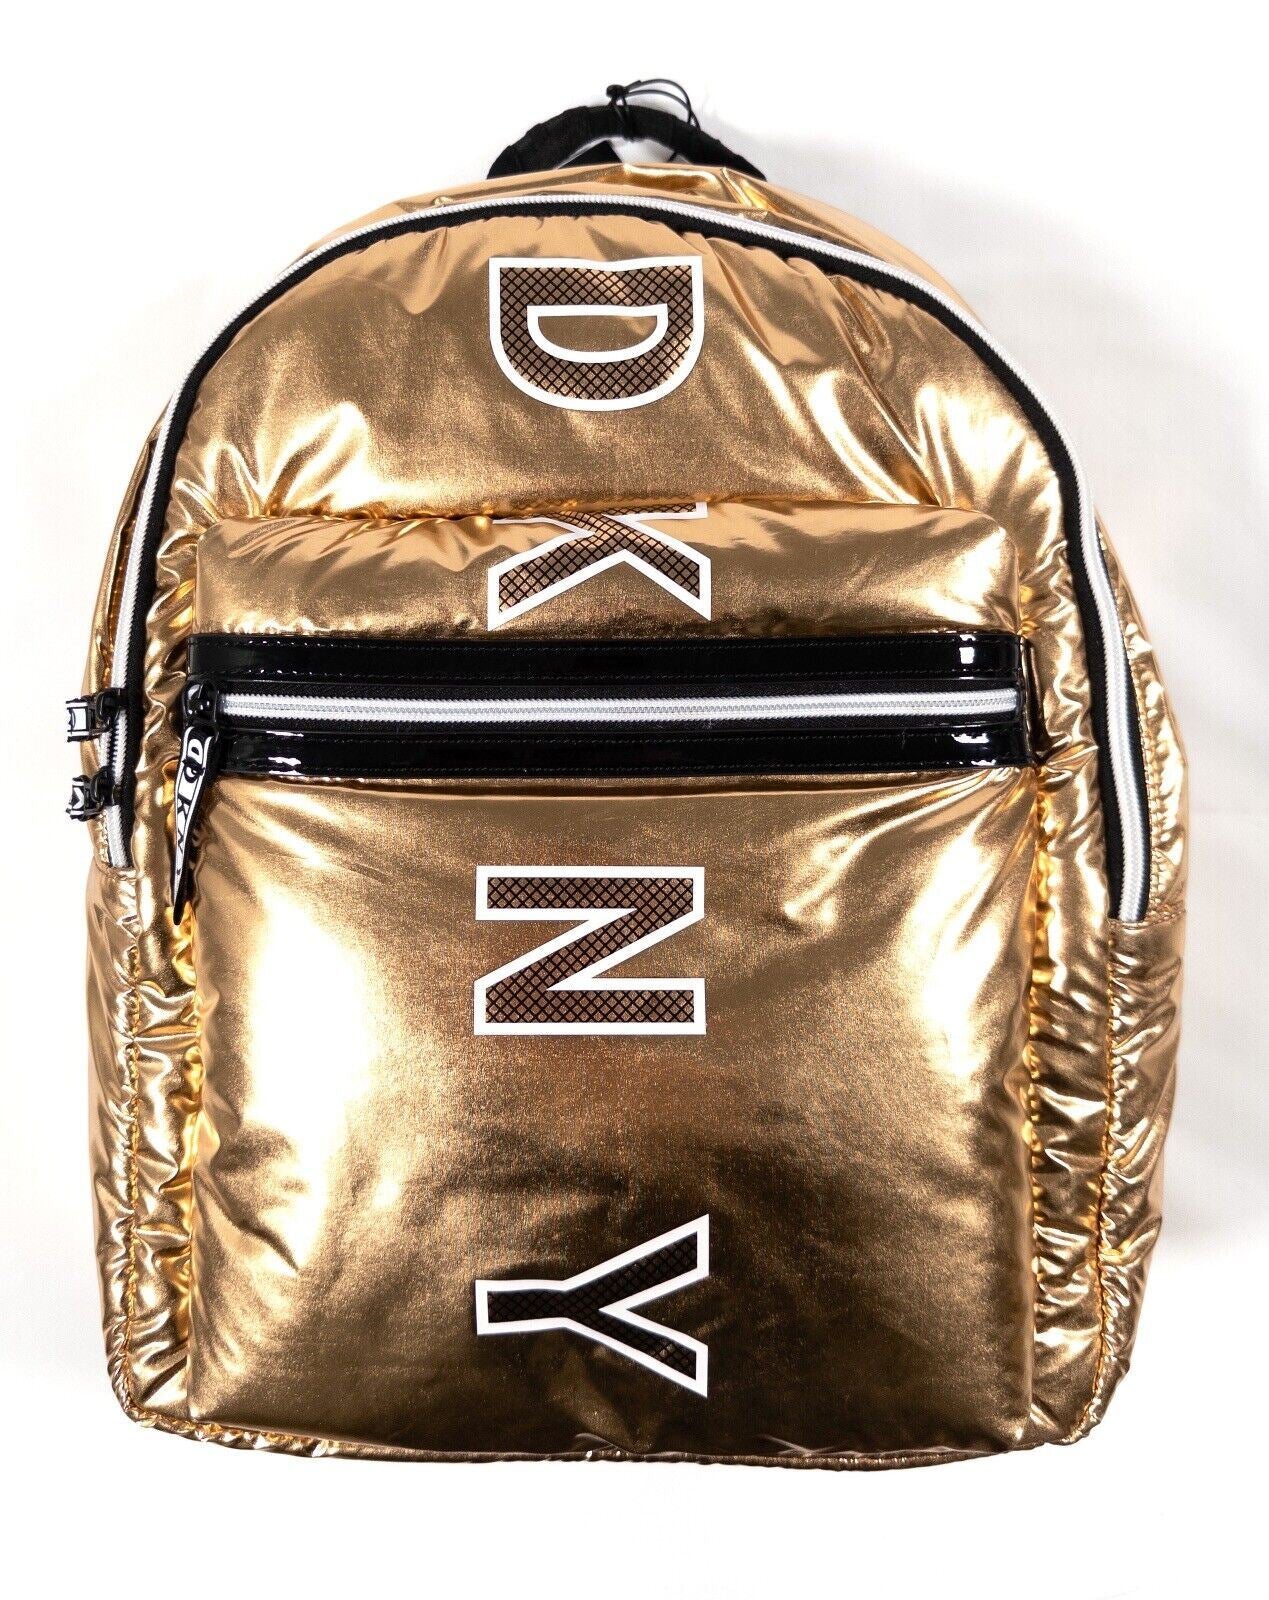 DKNY Metallic Gold Backpack Rucksack Bag Adjustable Straps Large